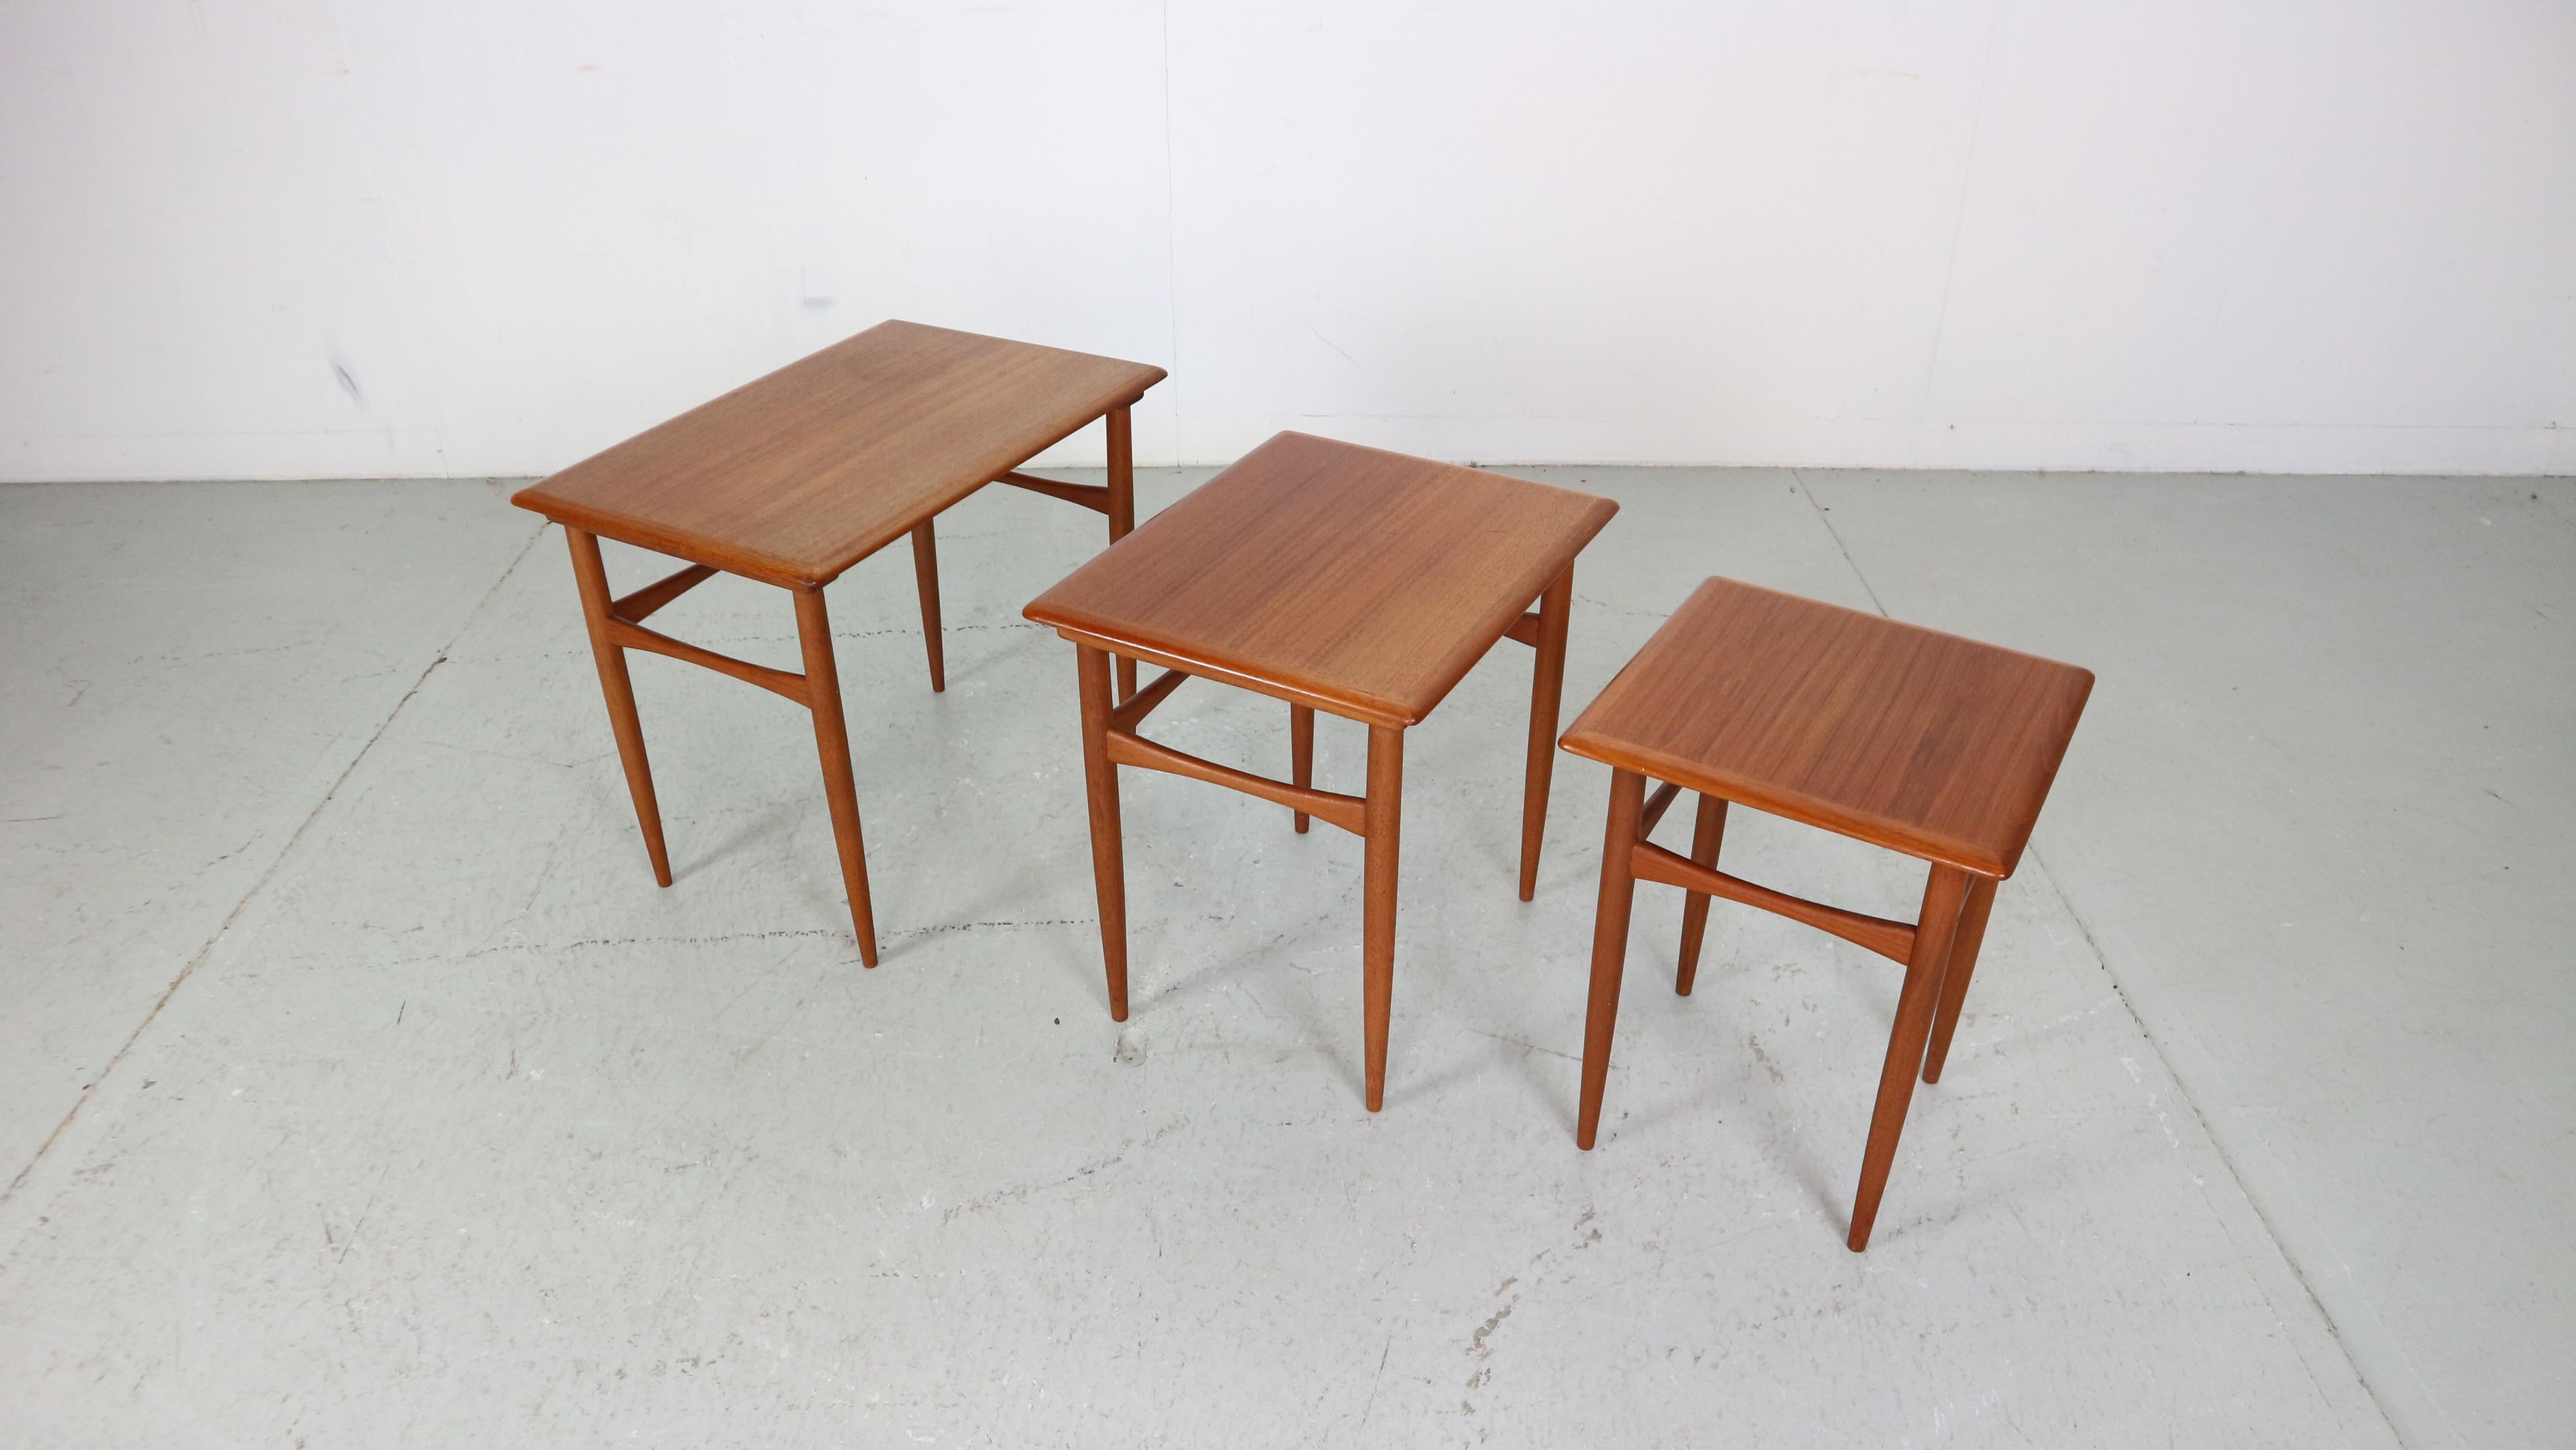 Beistelltische aus Teakholz im dänischen Vintage-Design, entworfen von Kai Kristiansen. Die eleganten und praktischen Tische lassen sich leicht ein- und ausschieben und nehmen bei Bedarf nur wenig Platz in Anspruch. Ein hochwertiges, modernes Design